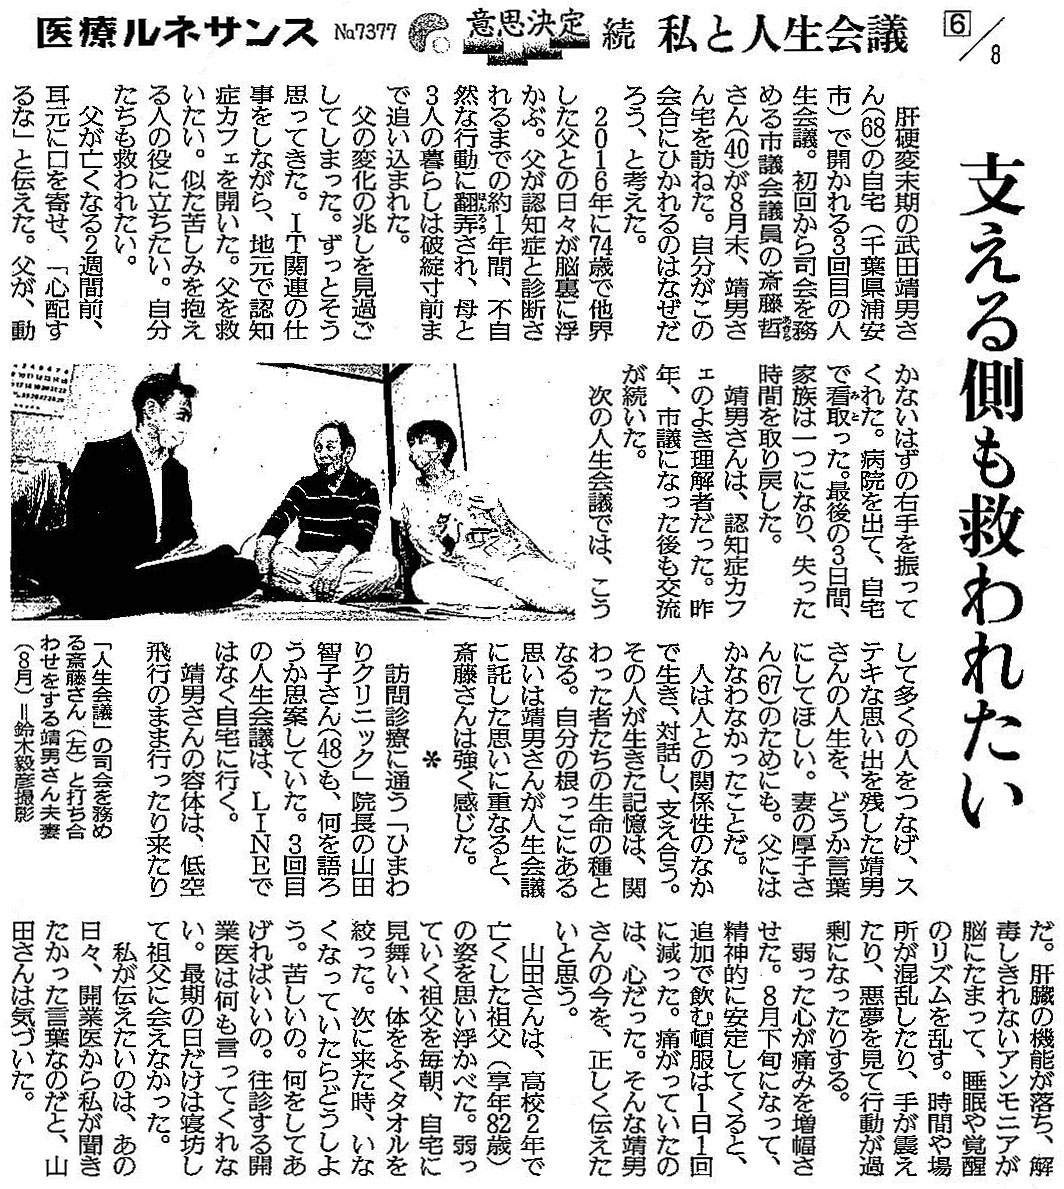 読売新聞 2020年9月30日掲載記事